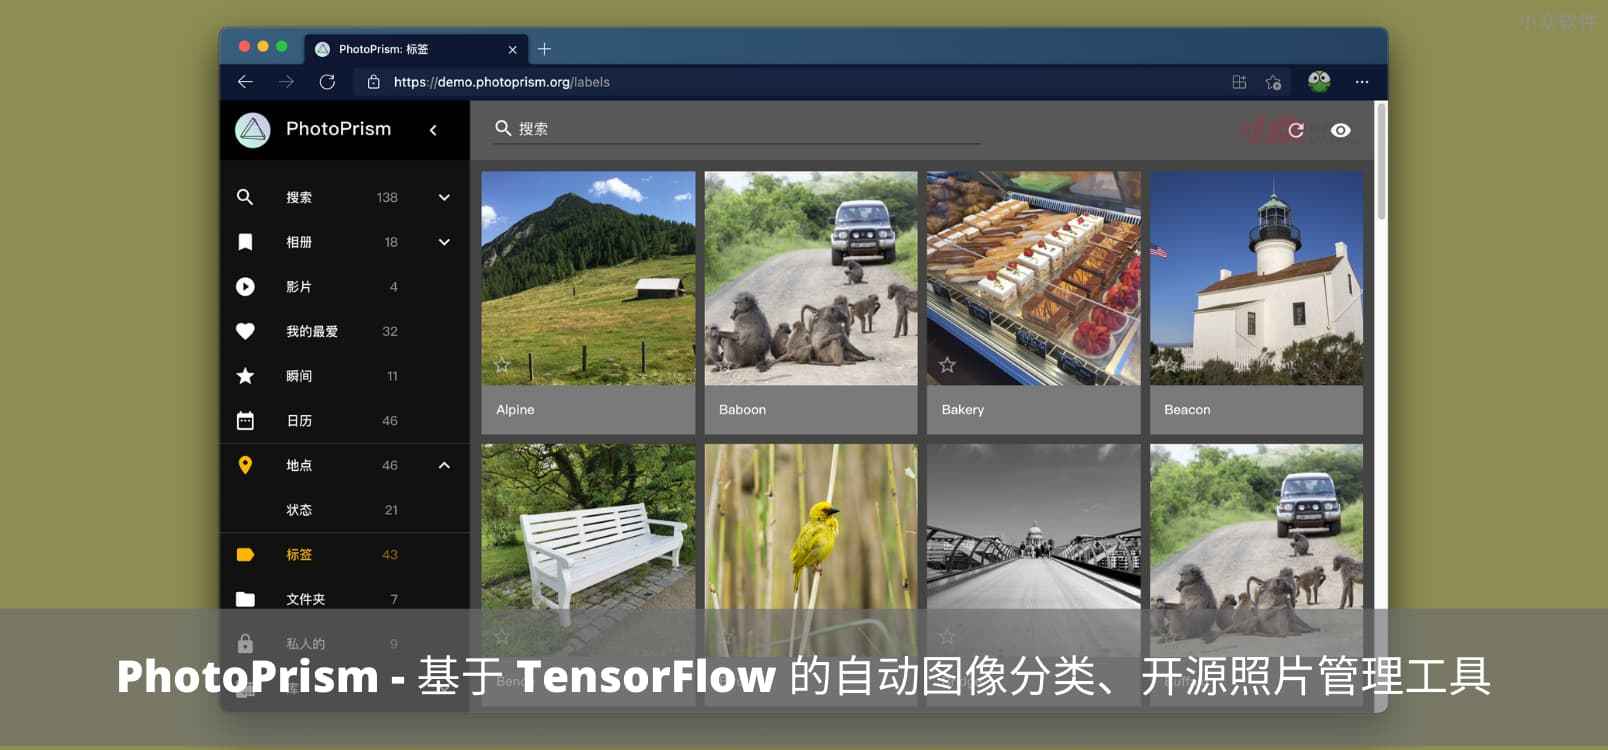 PhotoPrism – 可私有部署，基于机器学习 TensorFlow 的图像自动分类、开源照片管理工具，类本地化 Google Photos 服